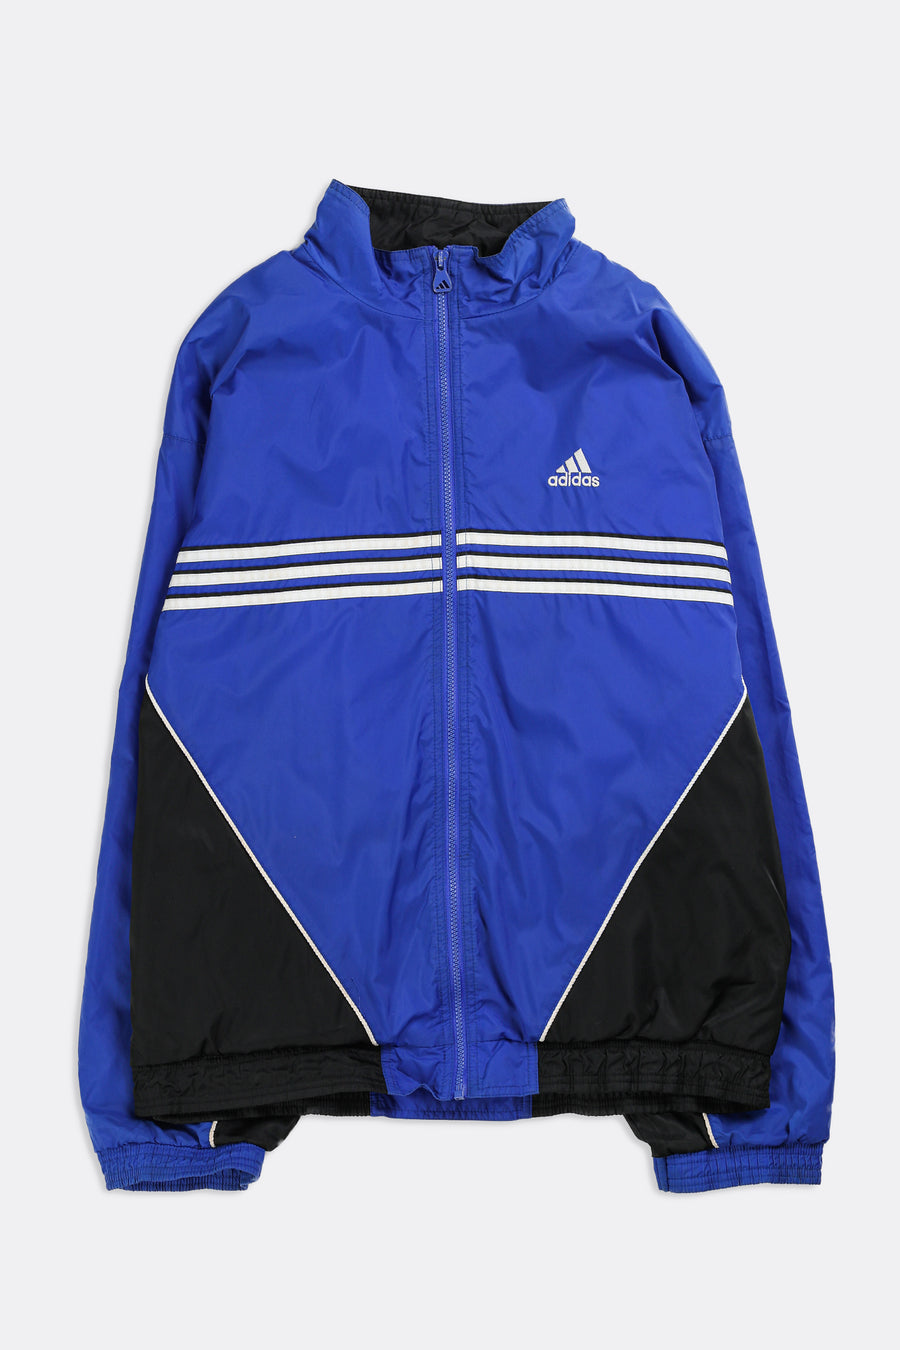 Vintage Adidas Windbreaker Jacket